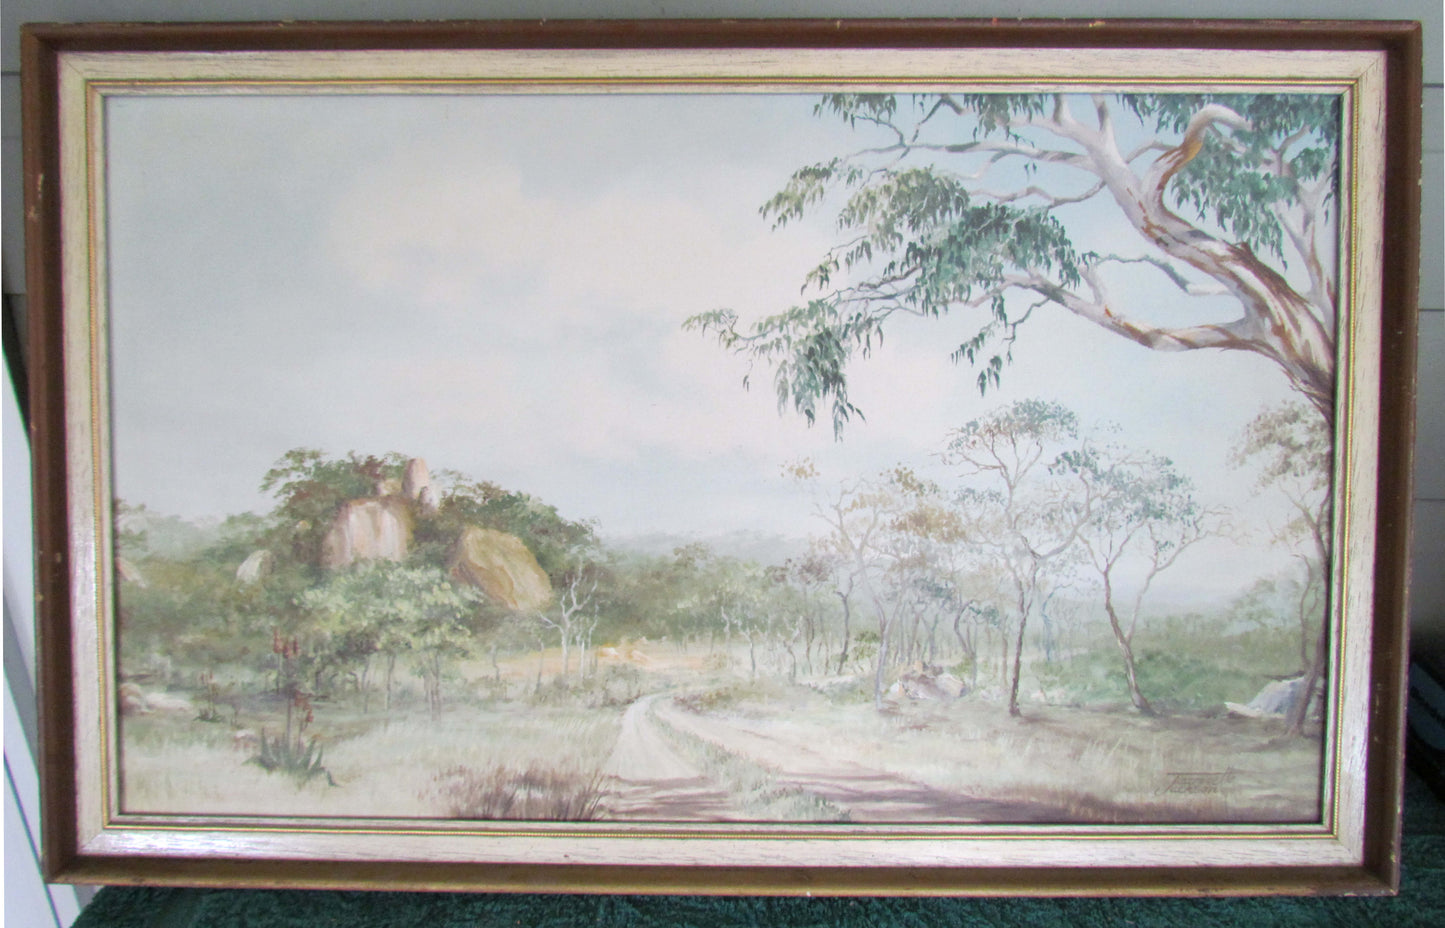 J Jackson South African Artist Oil On Board Of A Landscape Near Bulawayo